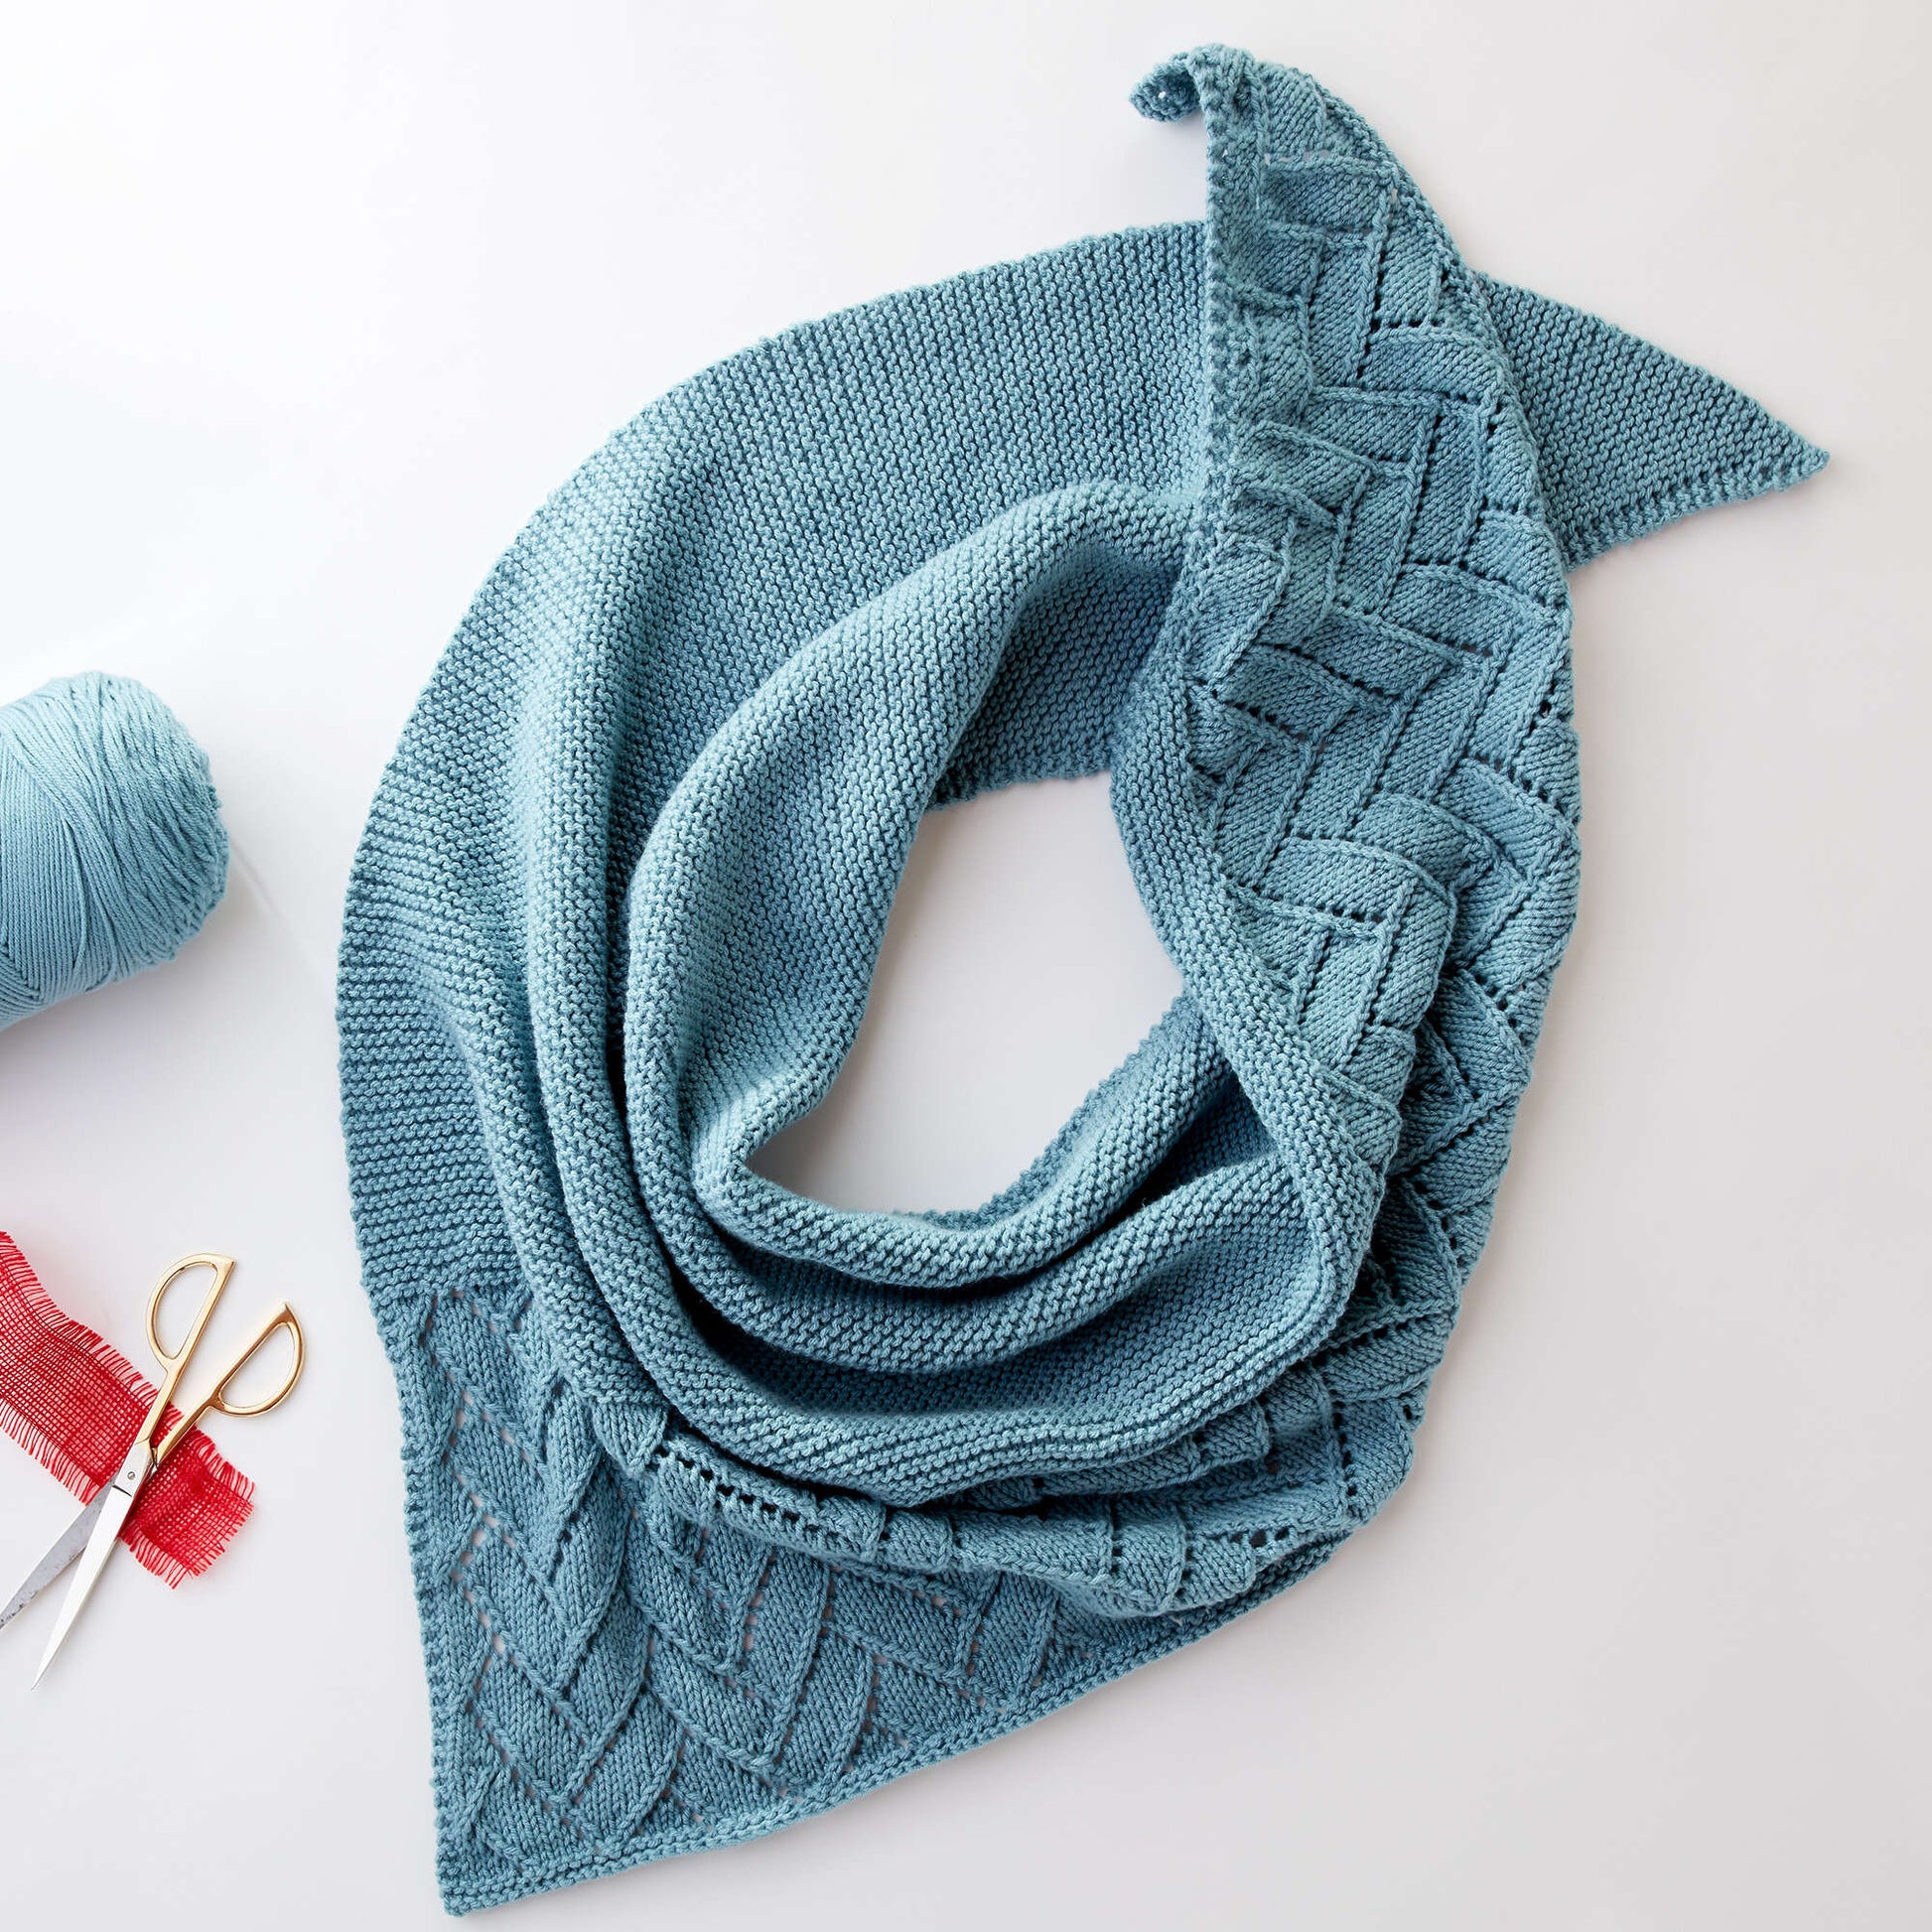 Caron Asymmetrical Lace Knit Shawl Single Size